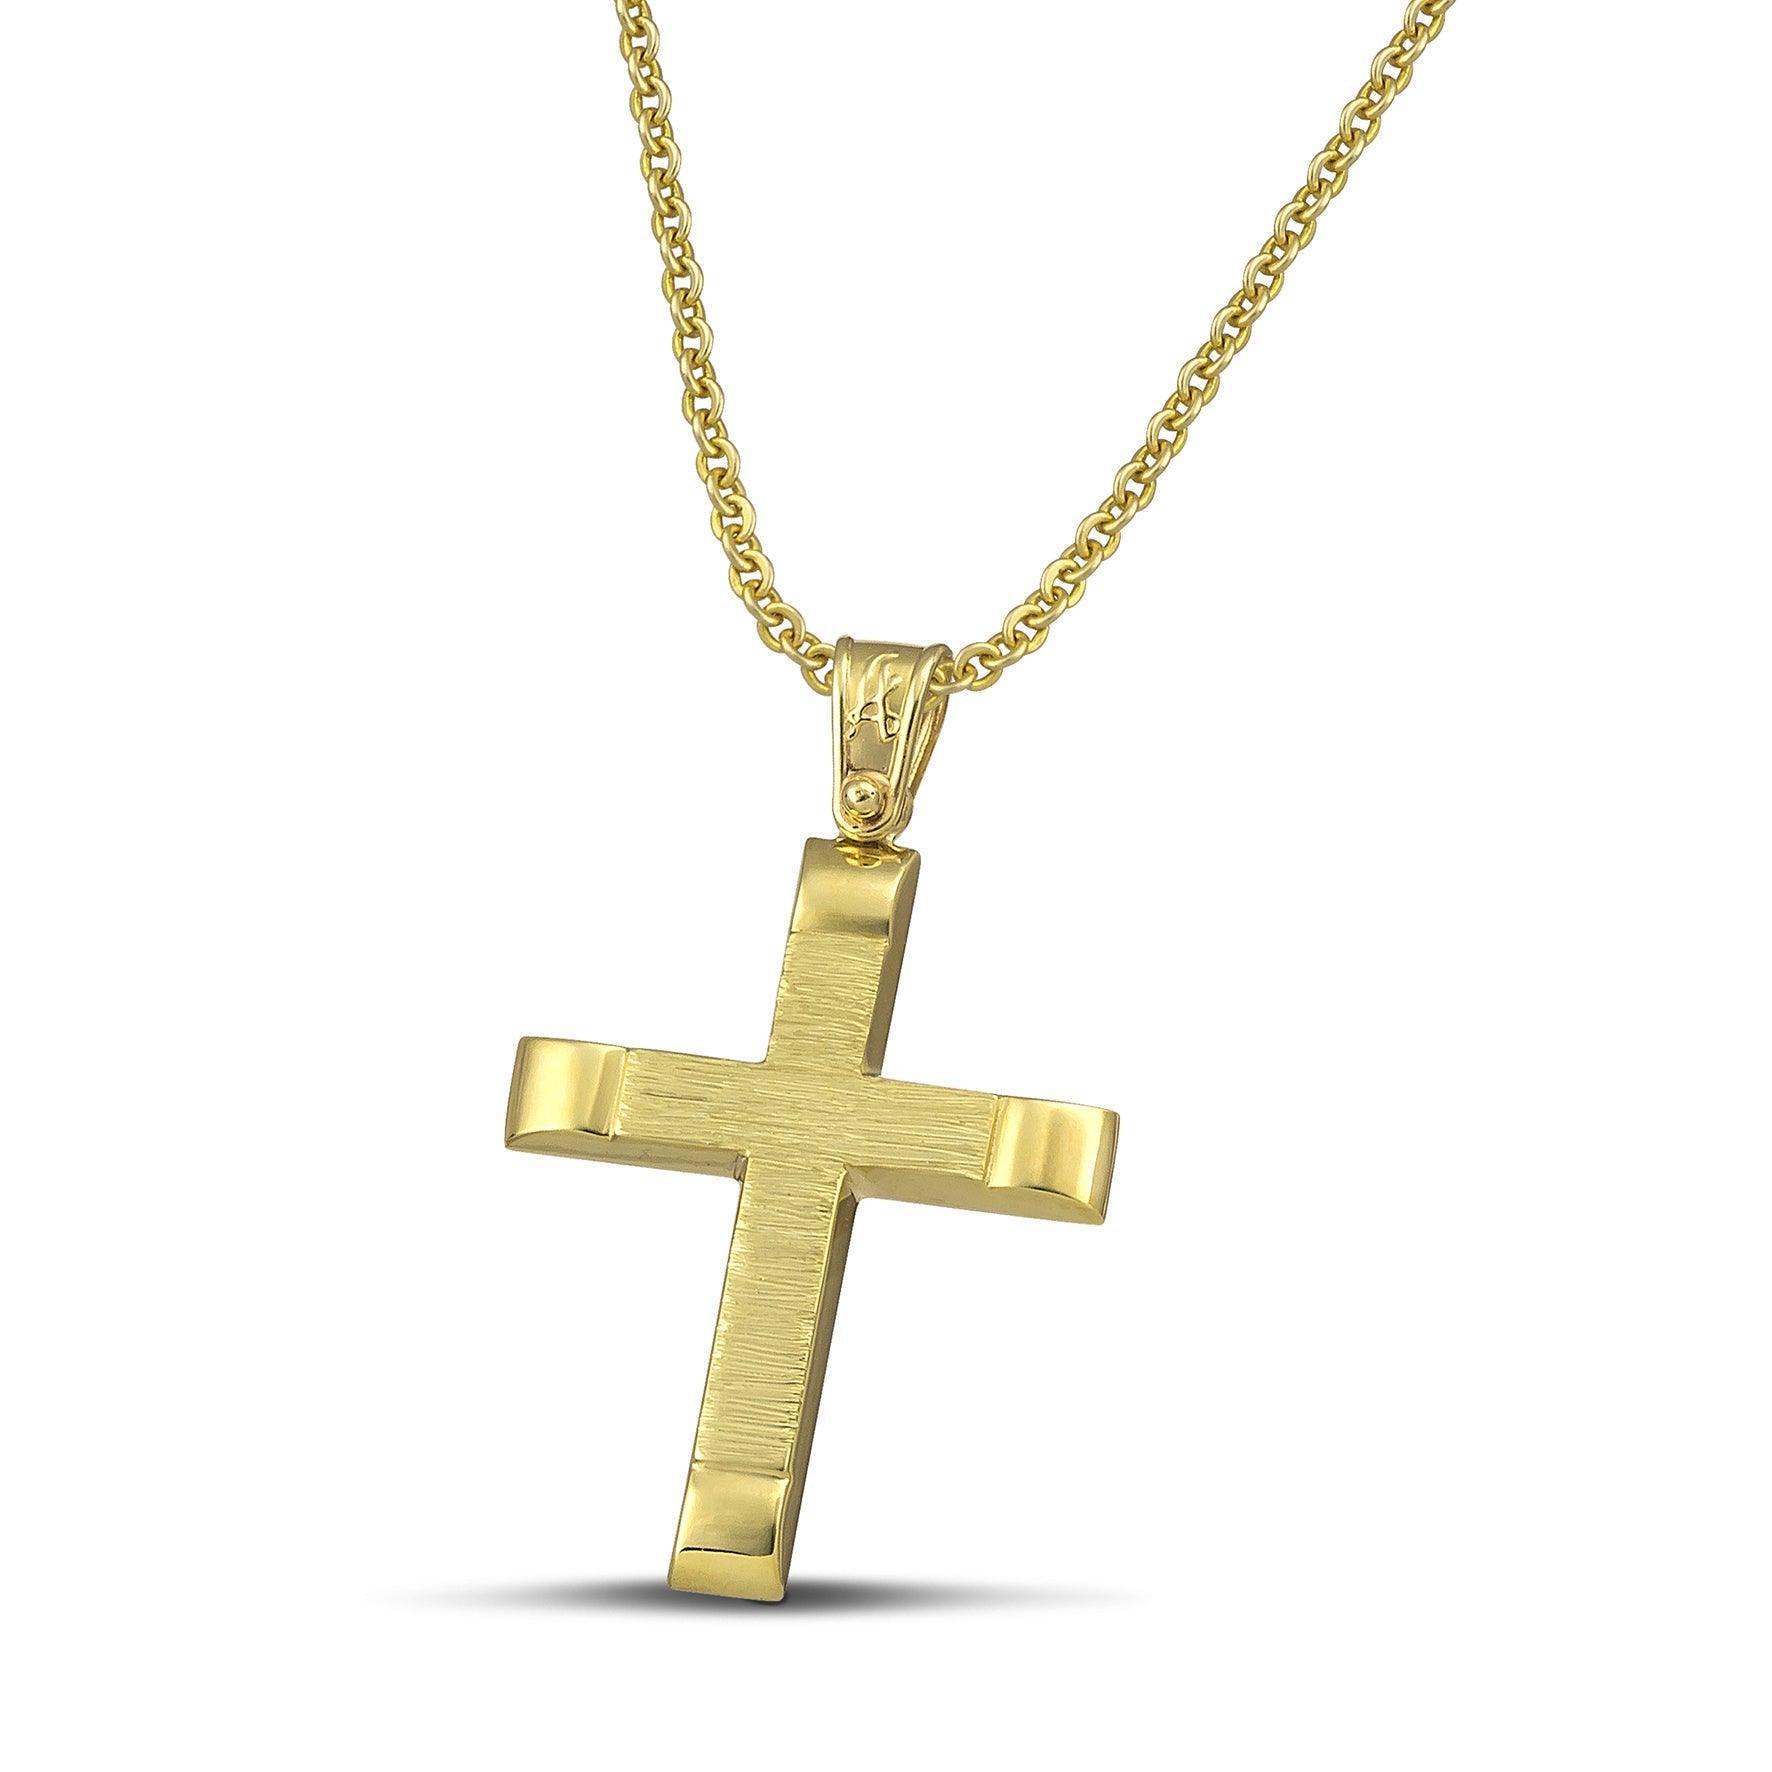 Αντρικός χρυσός βαφτιστικός σταυρός Κ14, σαγρέ με λουστράτες άκρες και λεπτή αλυσίδα.